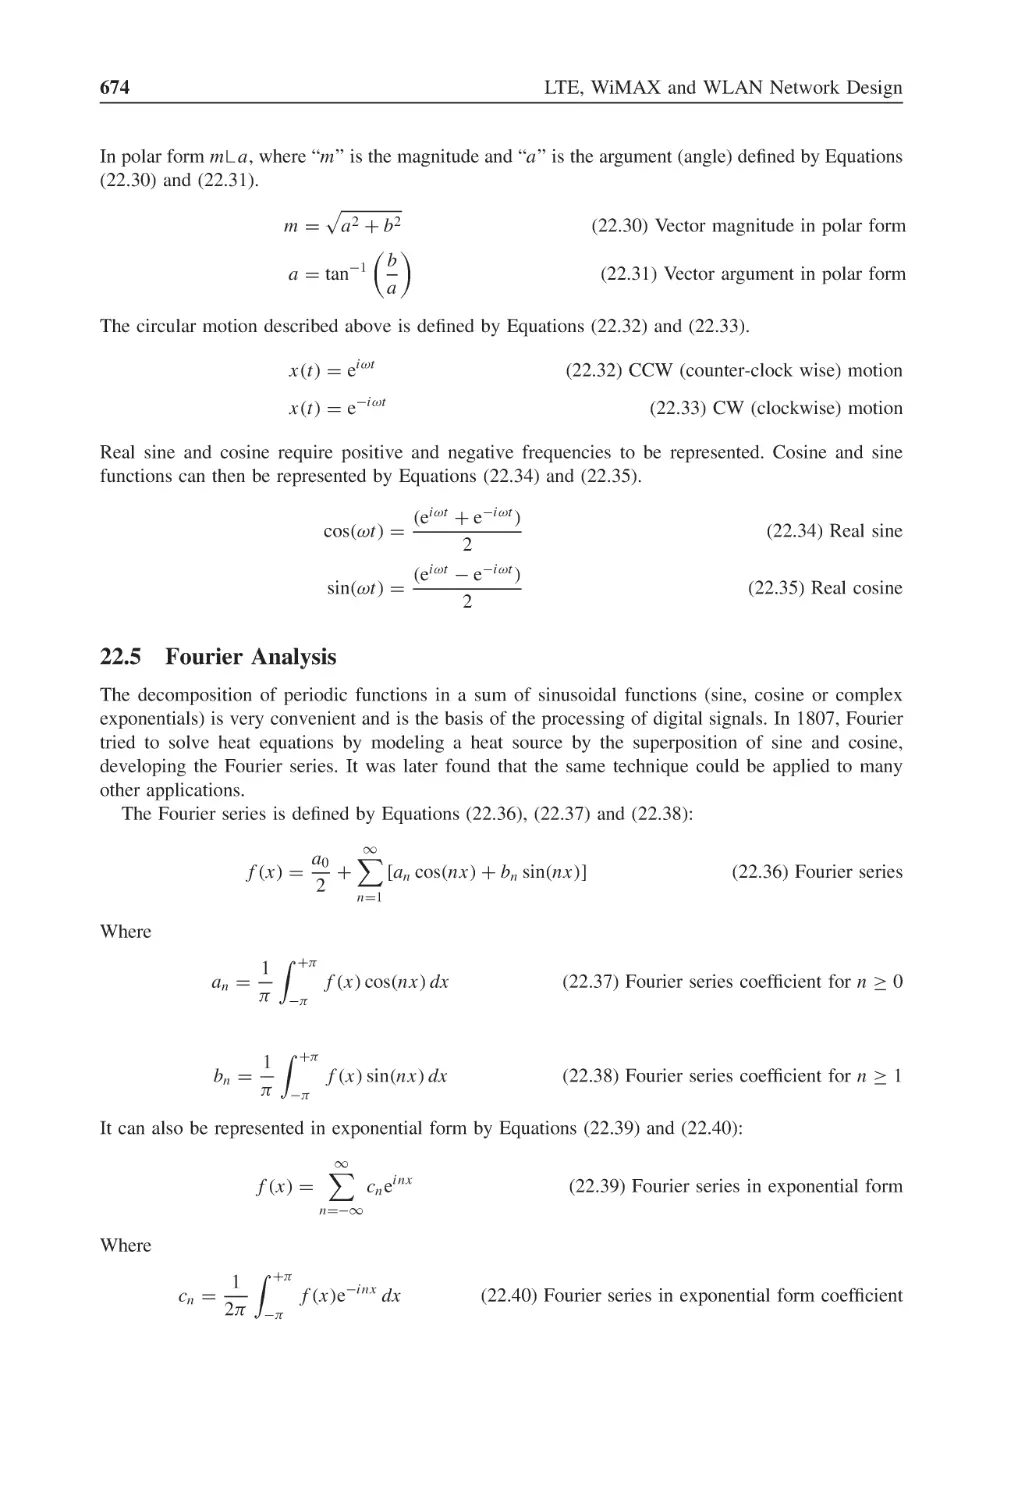 22.5 Fourier Analysis